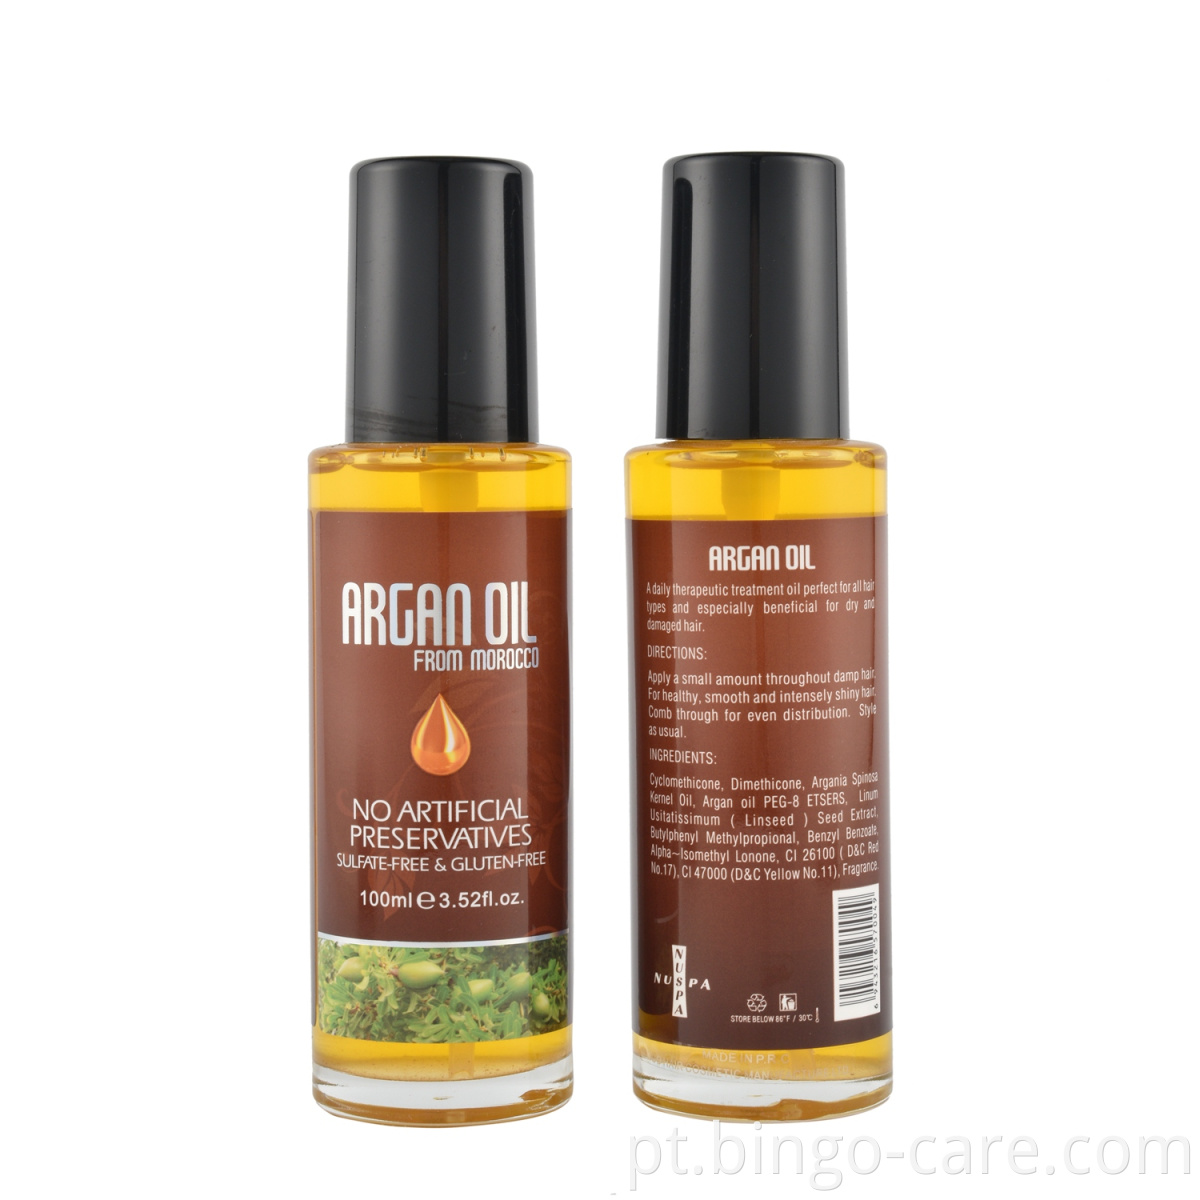 sucesso de vendas de óleo de argão puro para tratamento de cabelo em produtos capilares